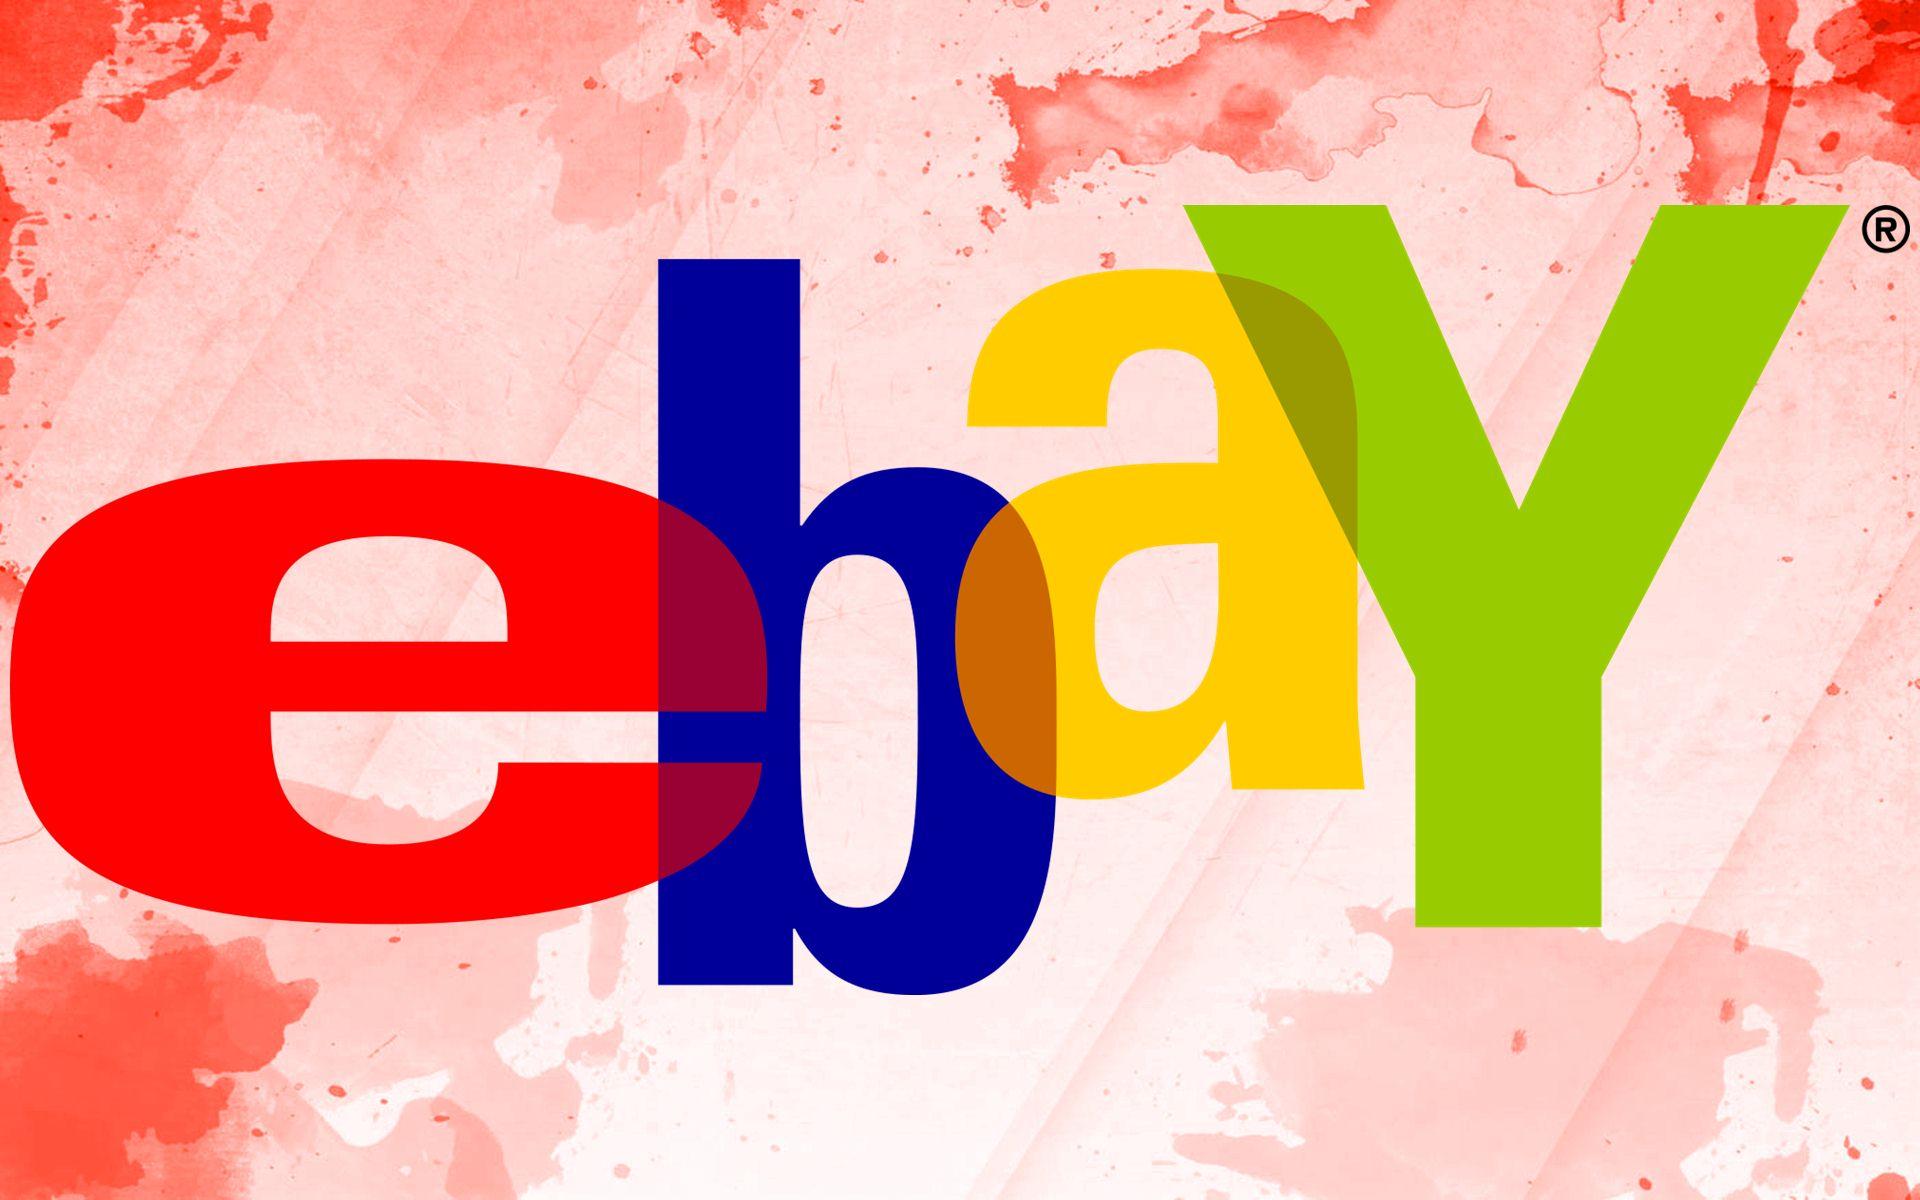 eBay Wallpaper. eBay Wallpaper, eBay